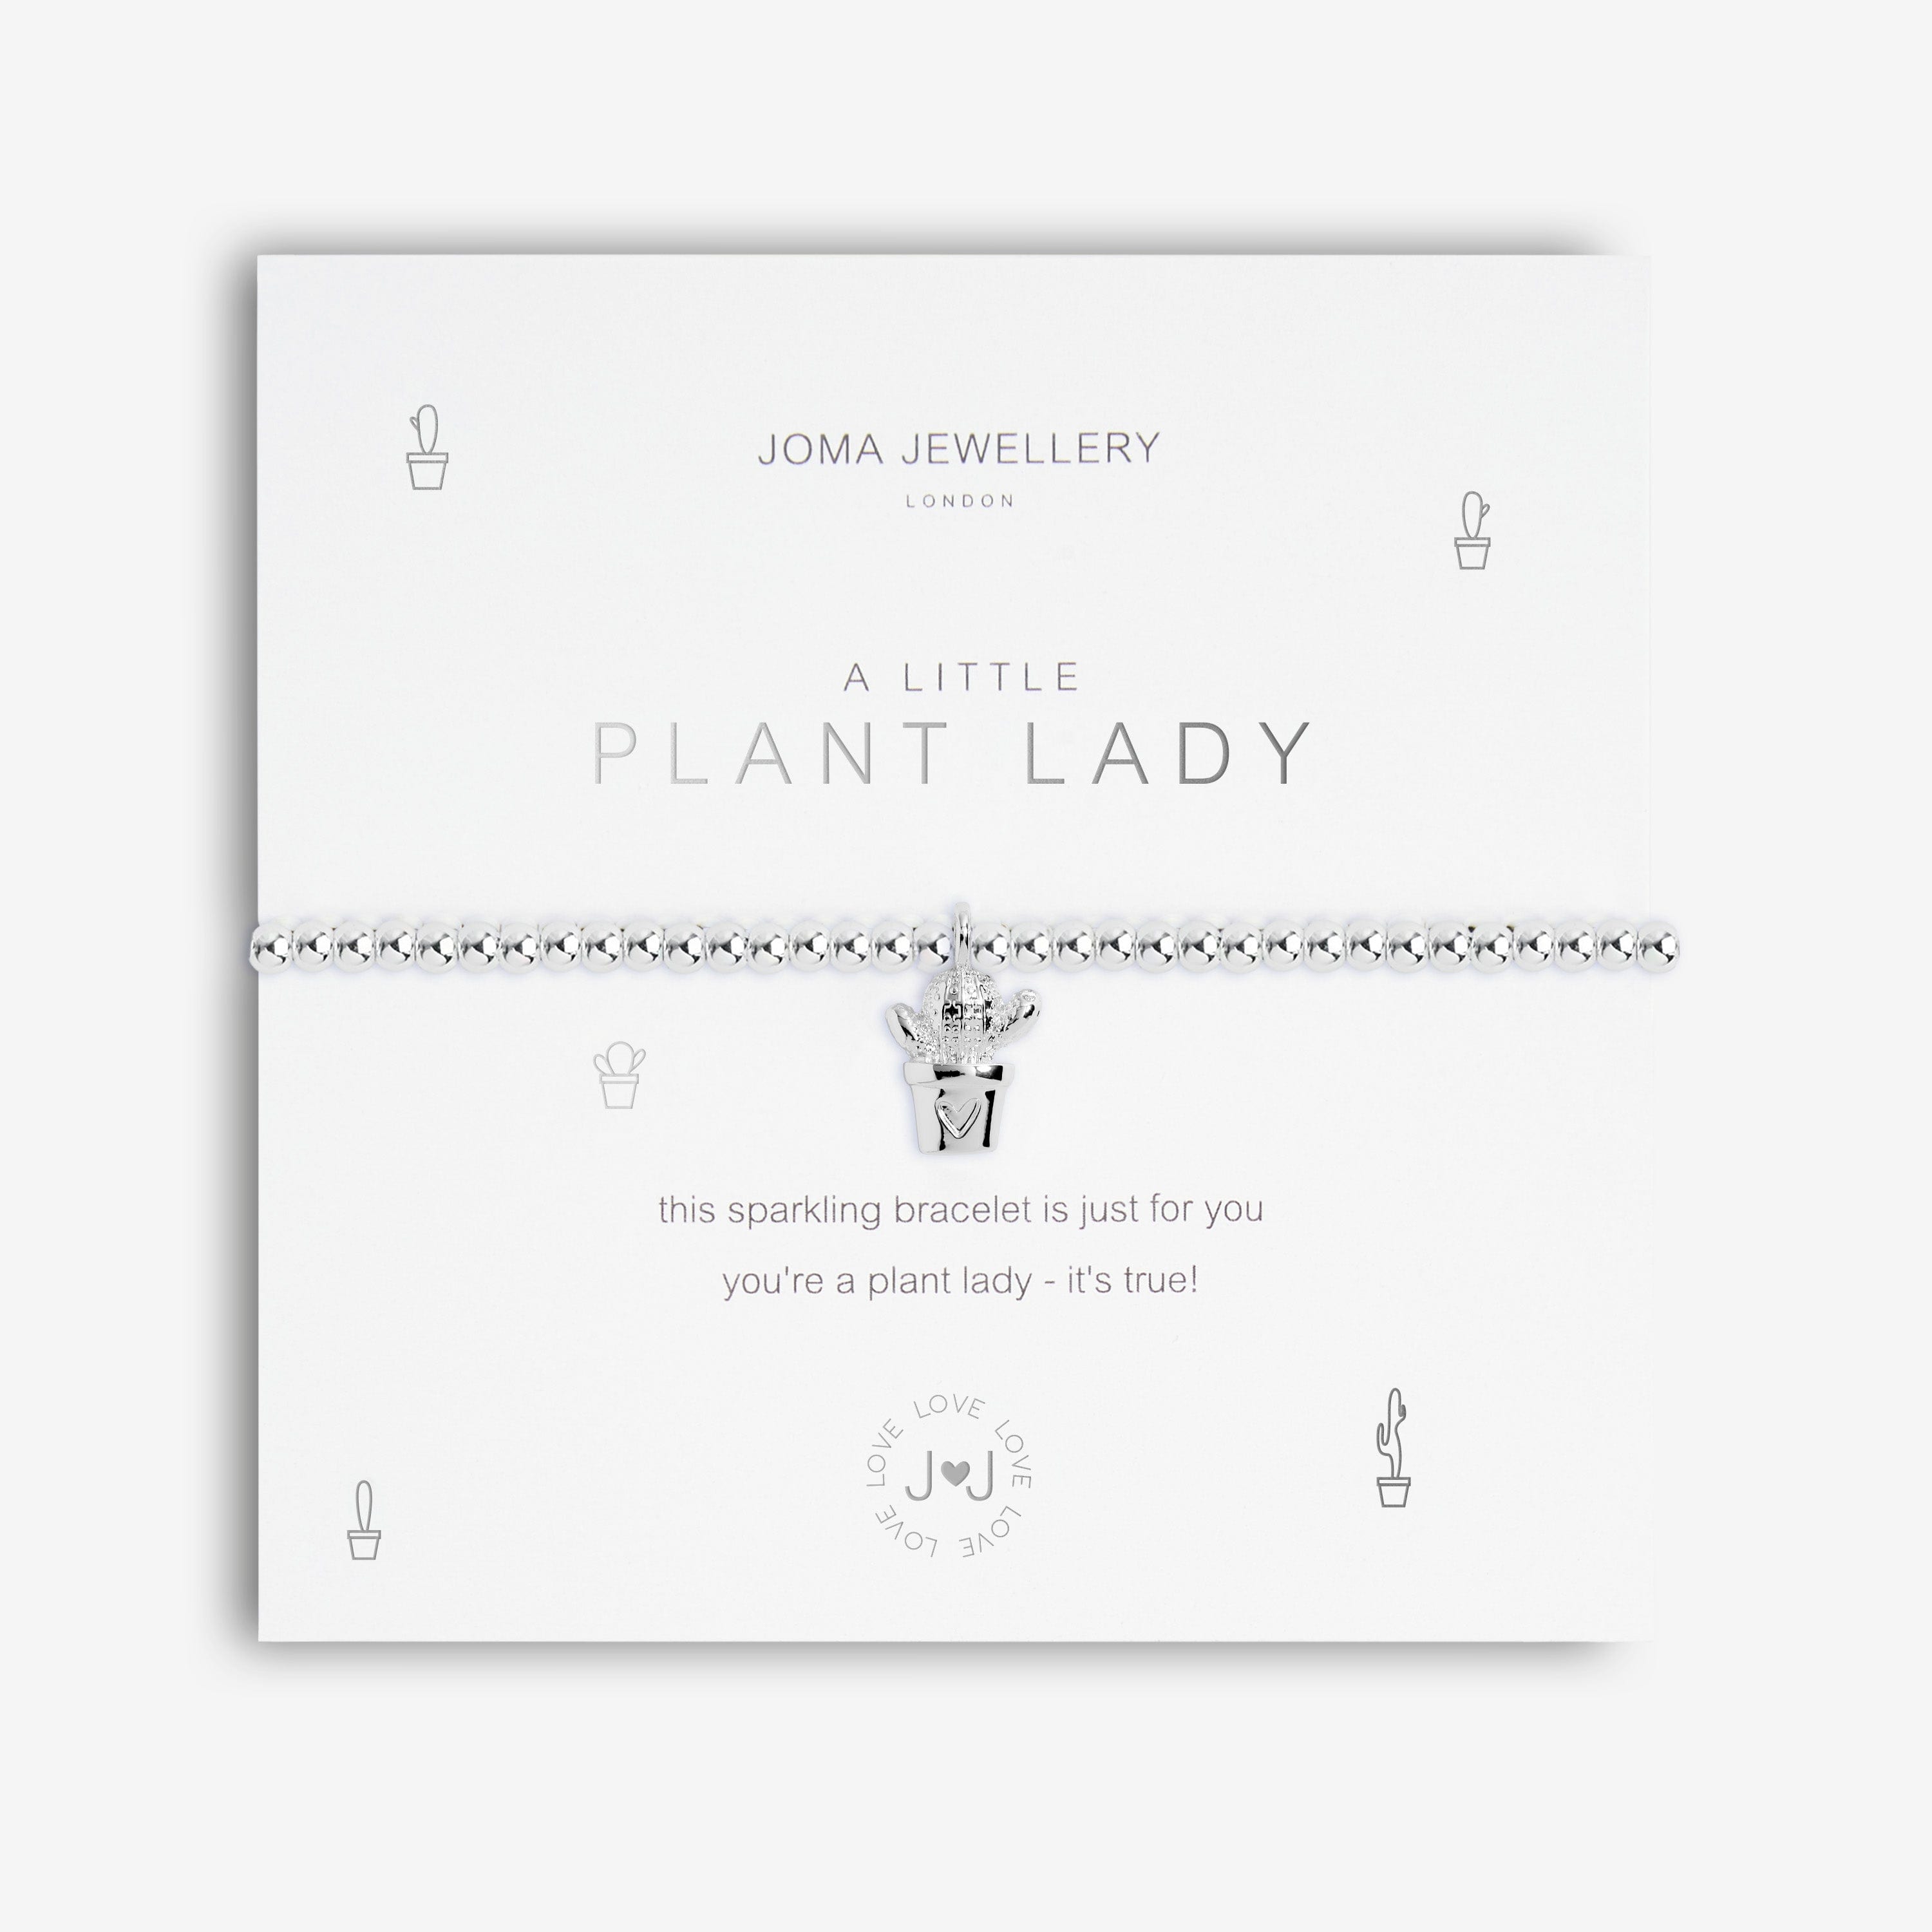 Joma Jewellery Bracelet Joma Jewellery Bracelet - A Little Plant Lady